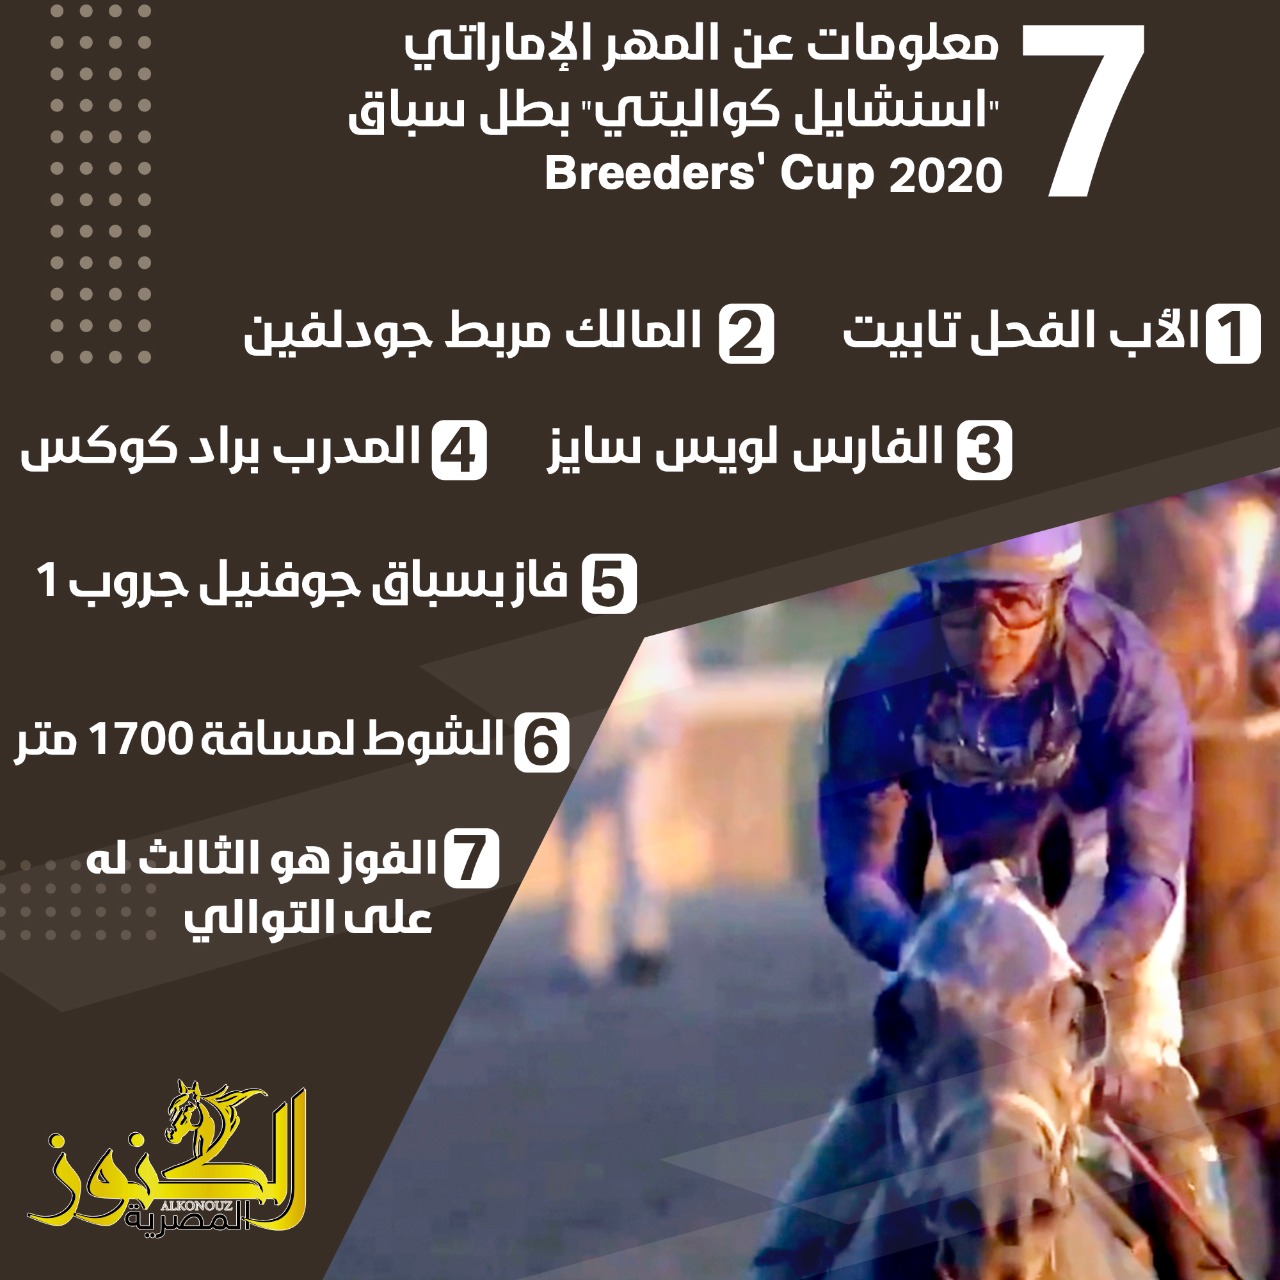 7 معلومات عن المهر الإماراتي "اسنشايل كواليتي" بطل سباق Breeders' Cup 2020